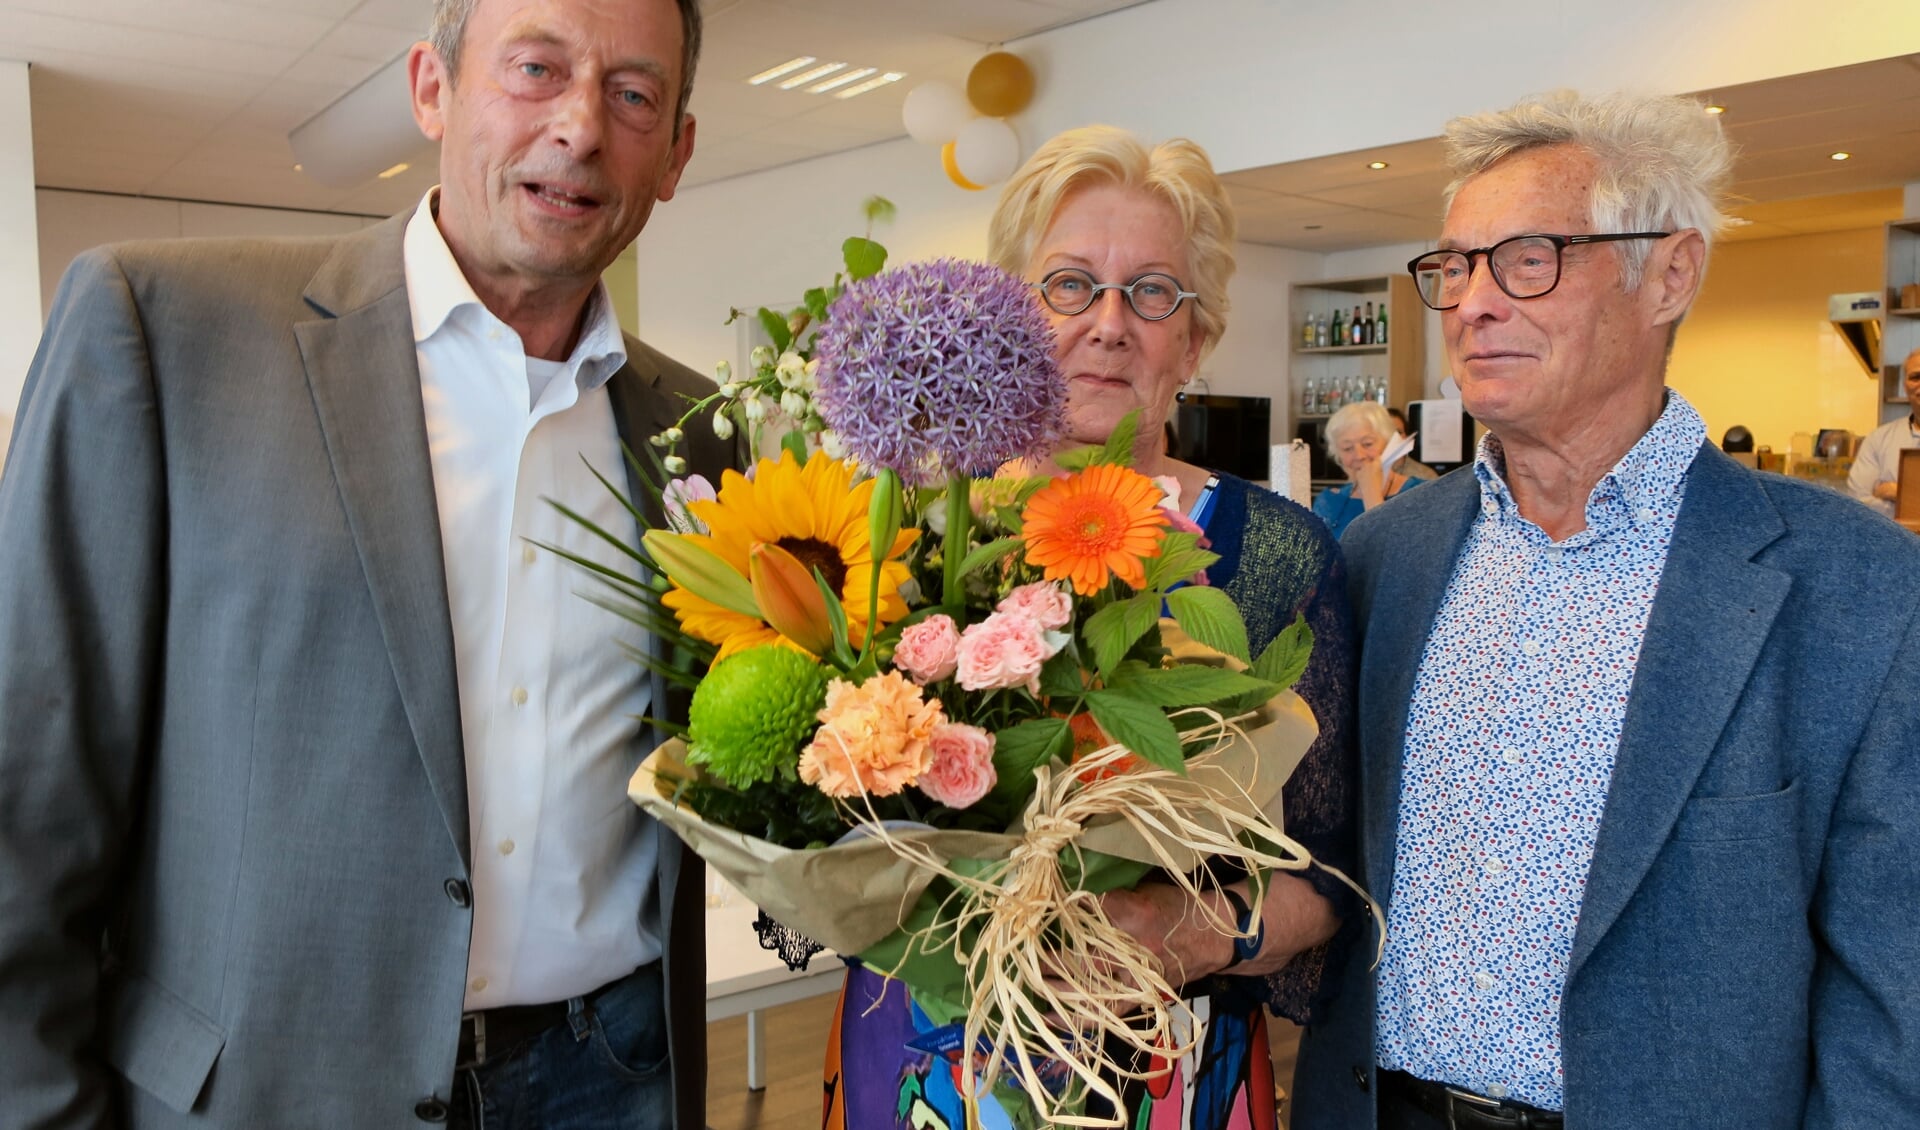 Philip Gravestein overhandigd bloemen aan Thecla en Tjeu Segers